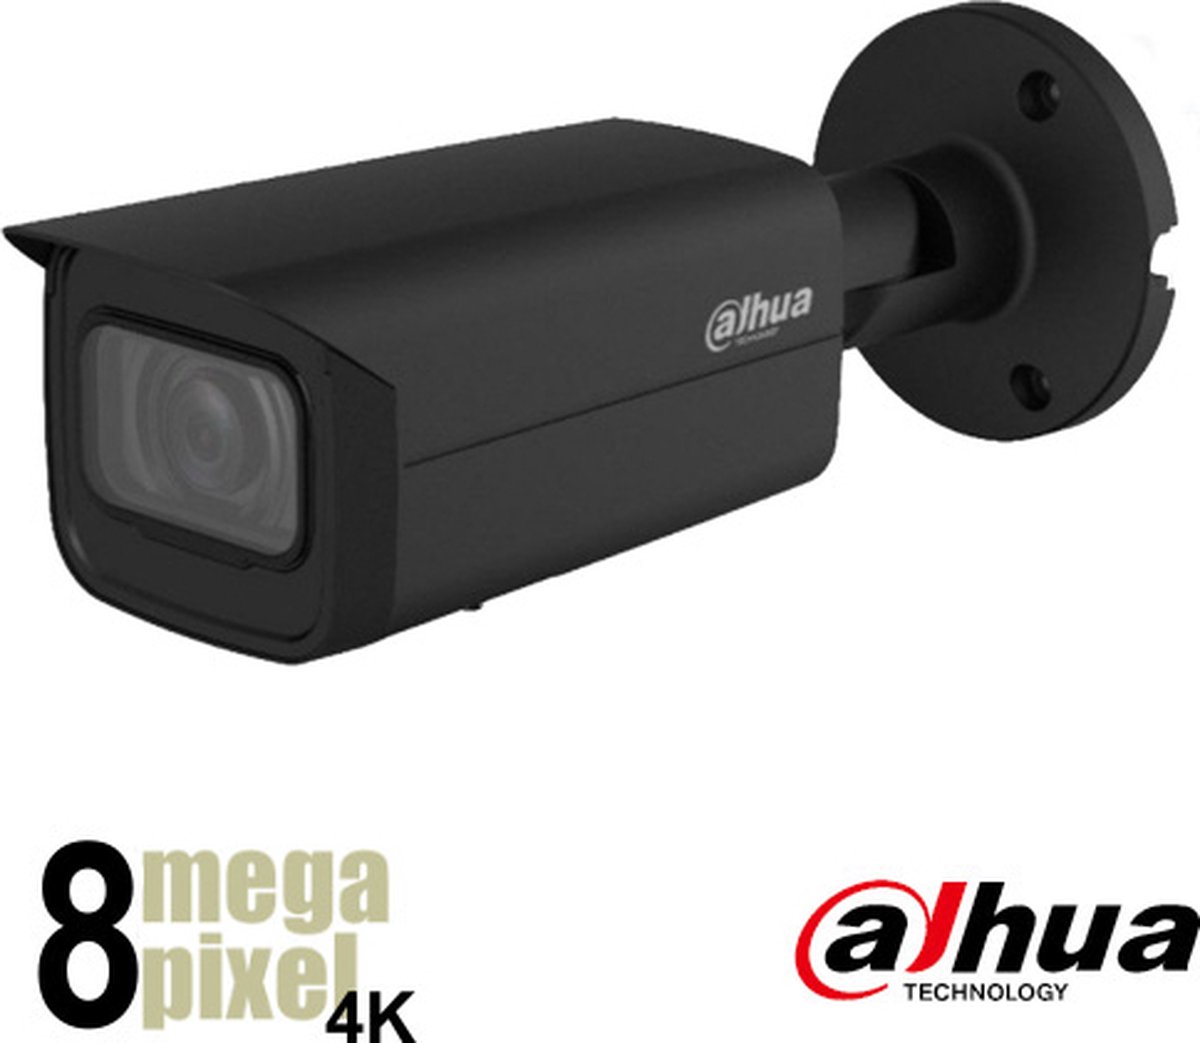 Dahua Beveiligingscamera - WizSense 4K IP Camera - Motorzoom - 60m Nachtzicht - Starlight - Slimme Bewegingsdetectie - Gezichtsherkenning - CMOS